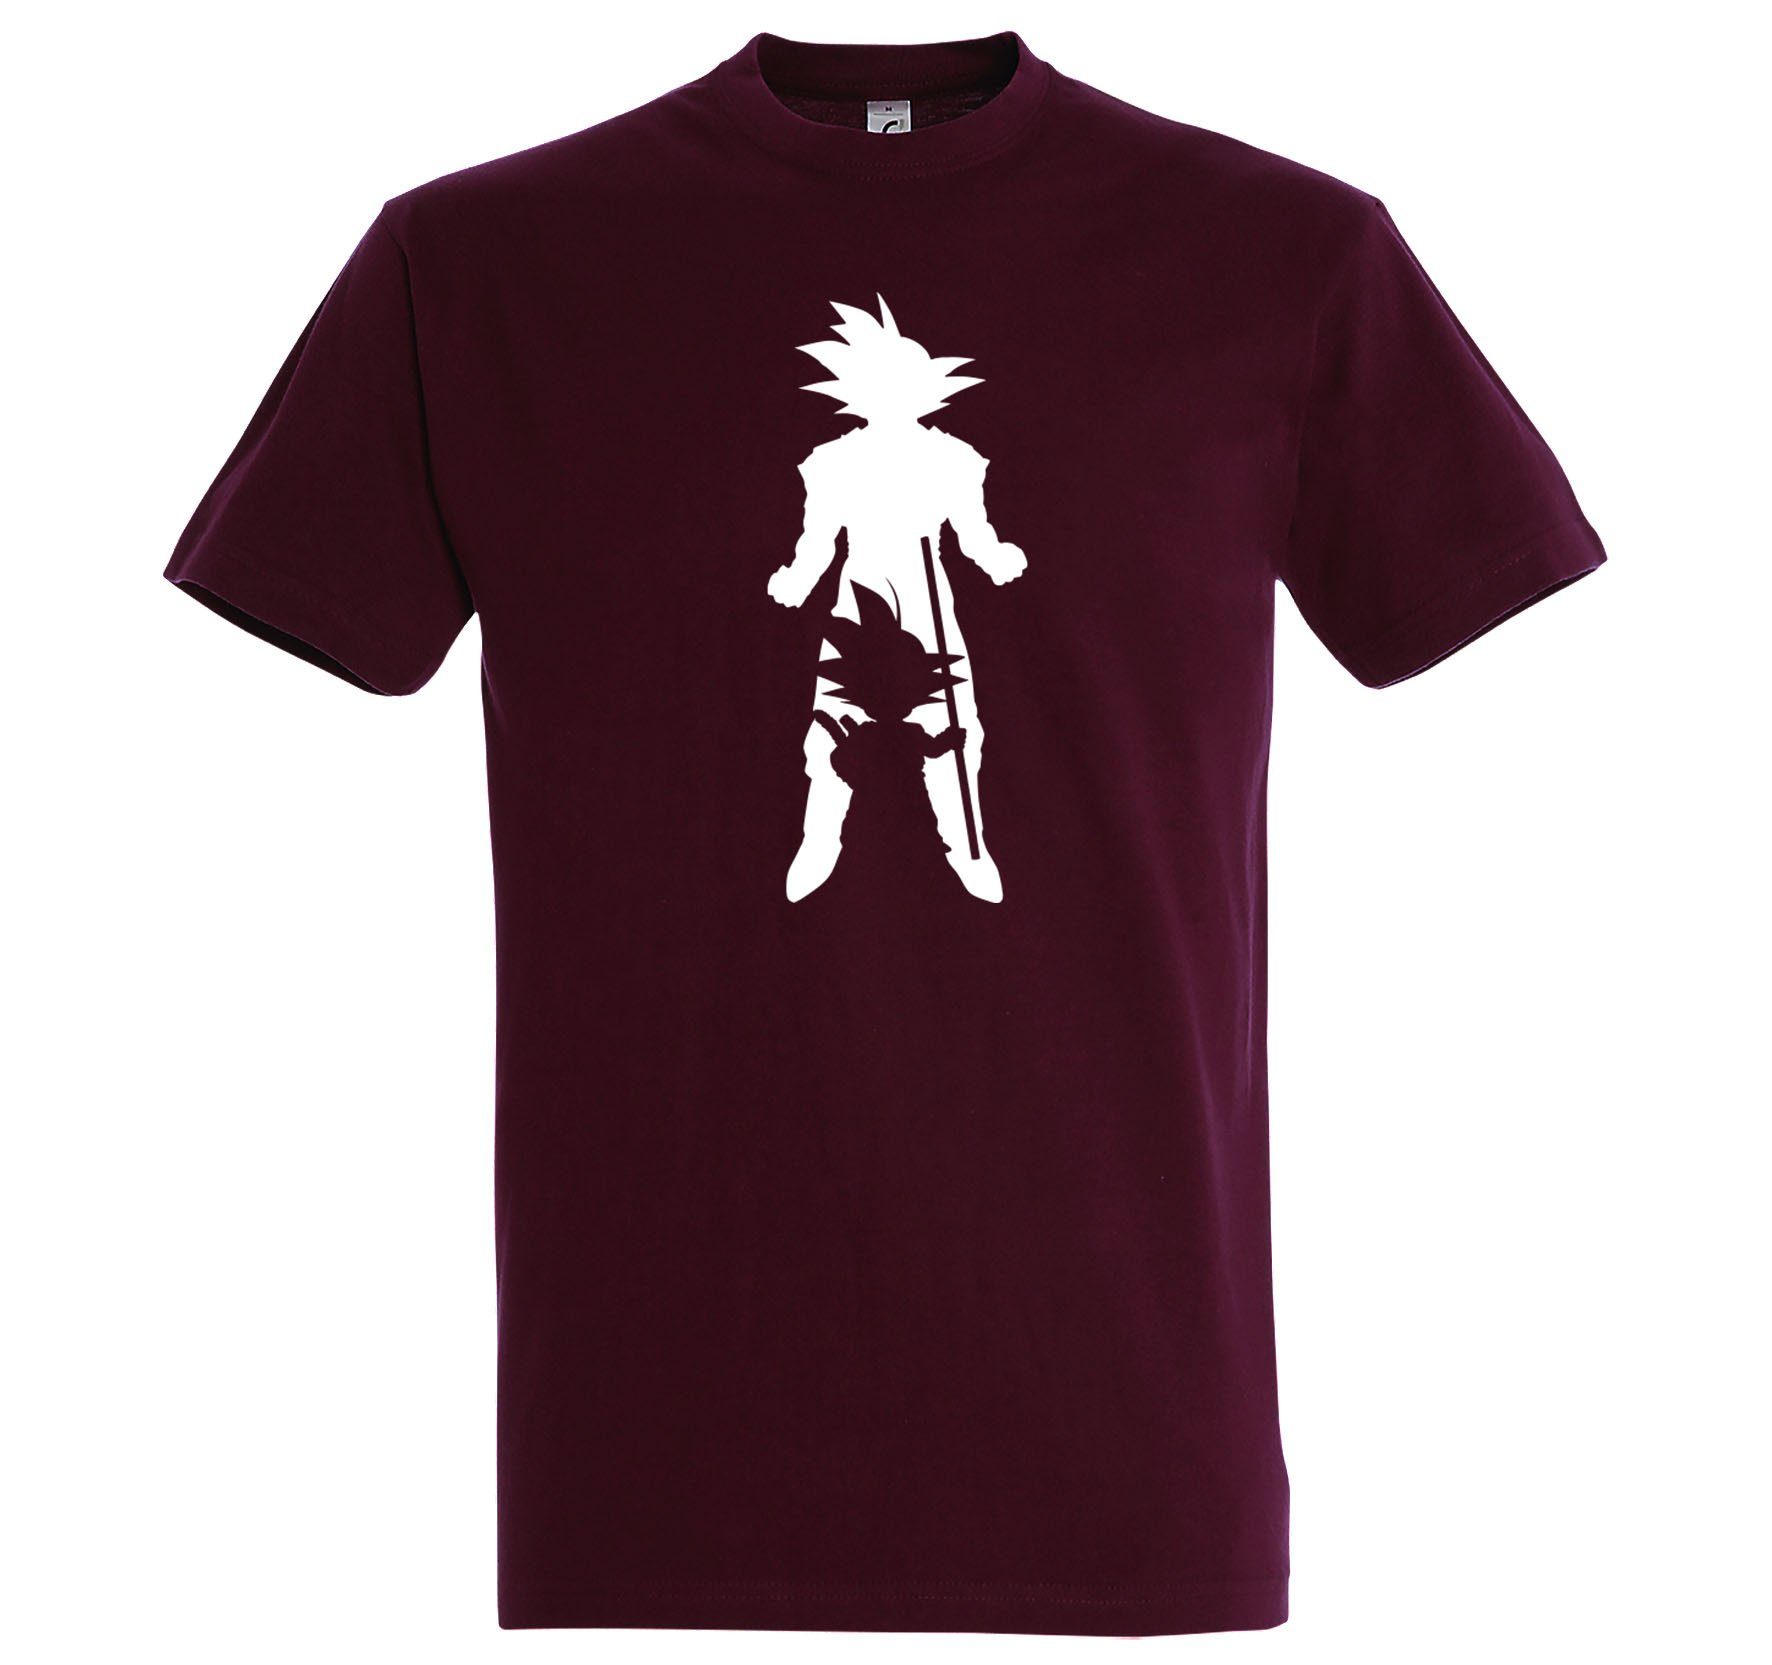 Super Youth Frontprint Goku Burgund mit T-Shirt Herren Designz trendigem Shirt